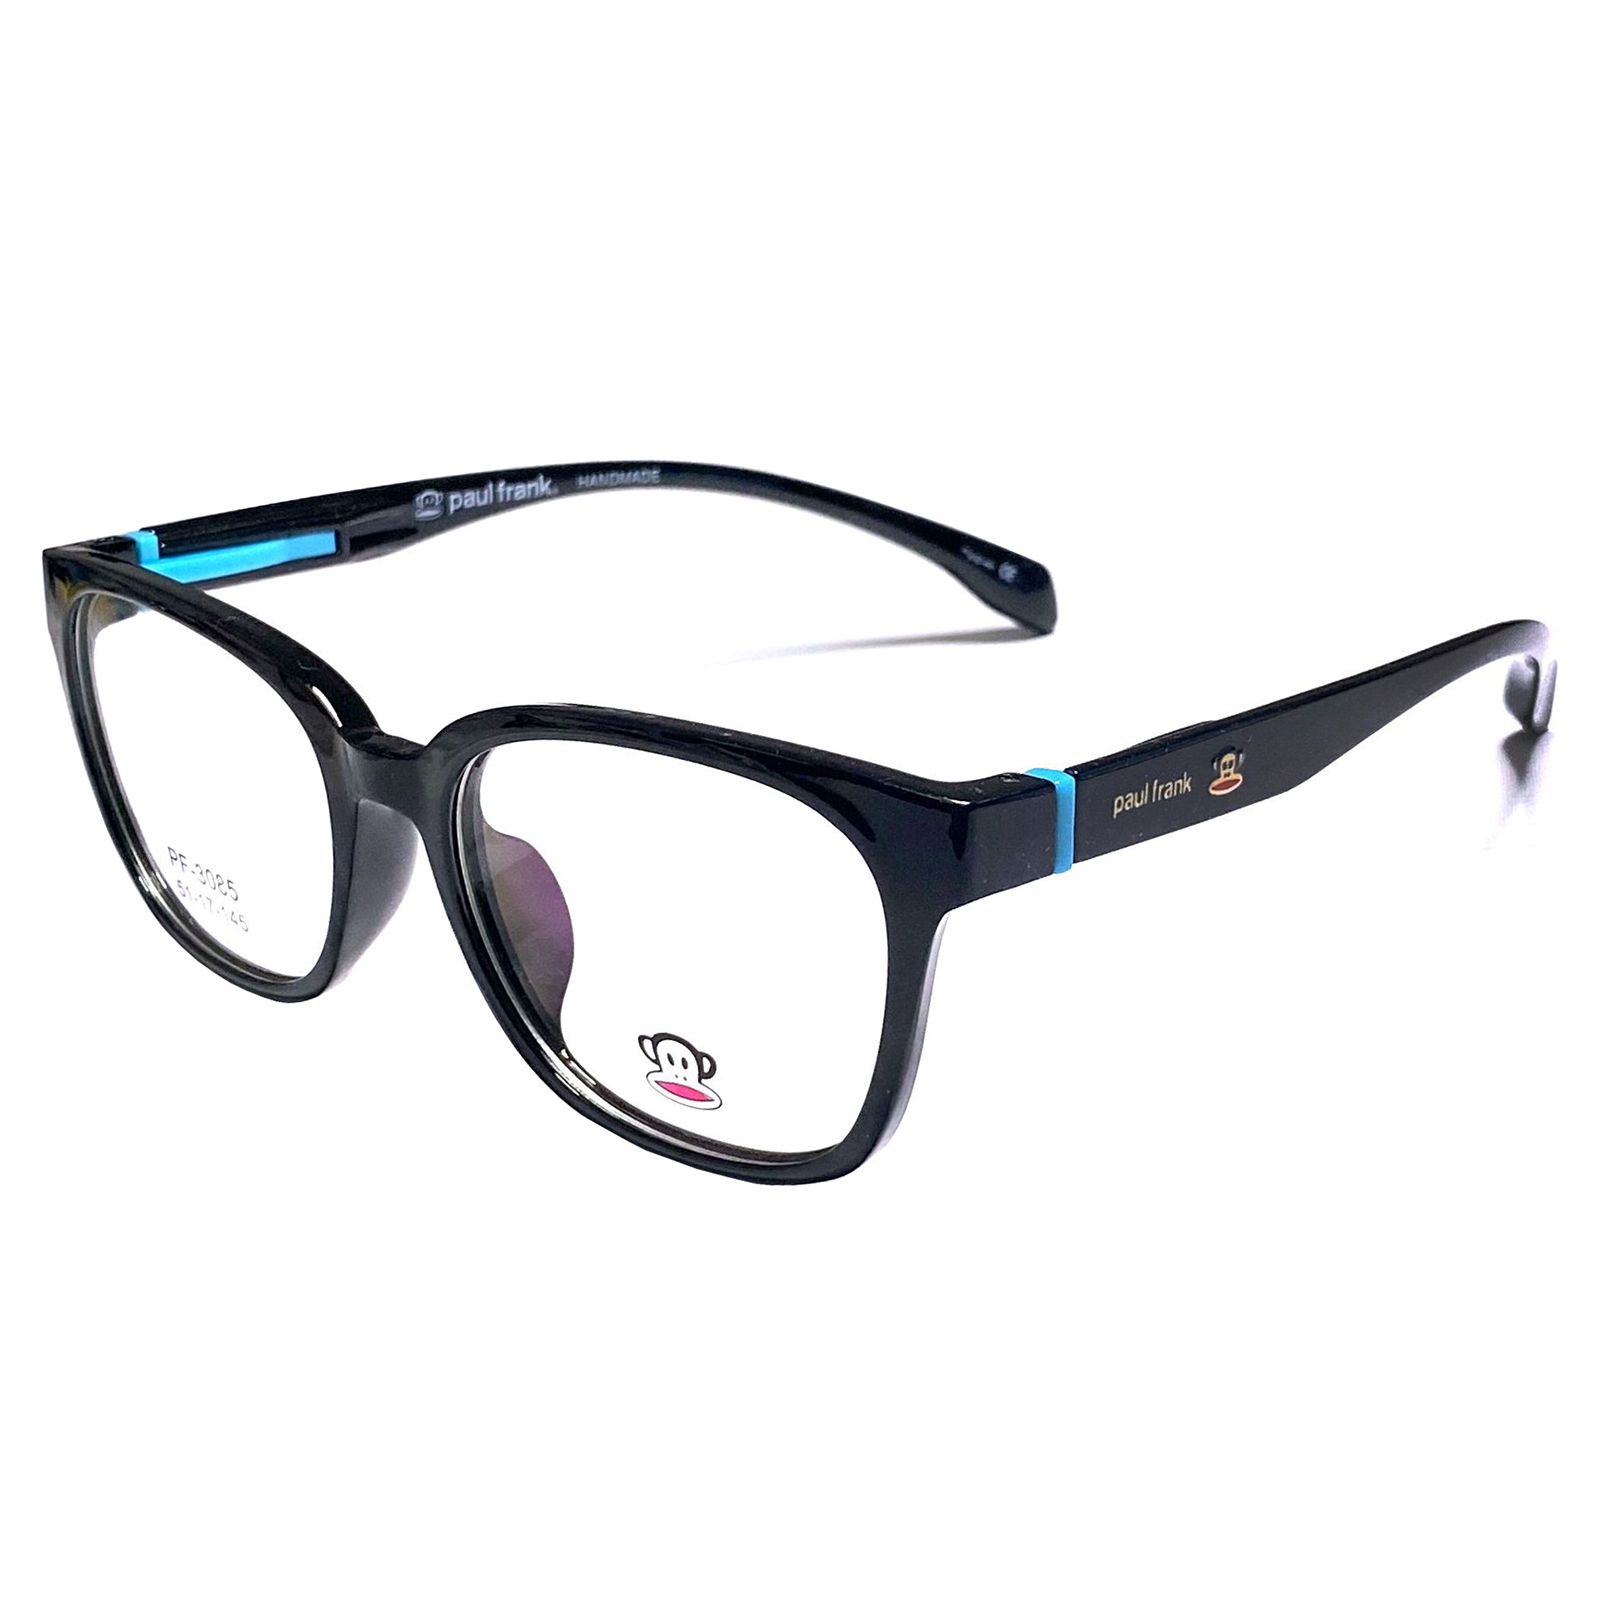 กรอบแว่นตา สำหรับตัดเลนส์ แว่นสายตา แว่นตา Fashion รุ่น Paul Frank 3085 กรอบเต็ม Rectangle ทรงรี ขาข้อต่อ วัสดุ TR 90 รับตัดเลนส์ทุกชนิด ราคาถูก